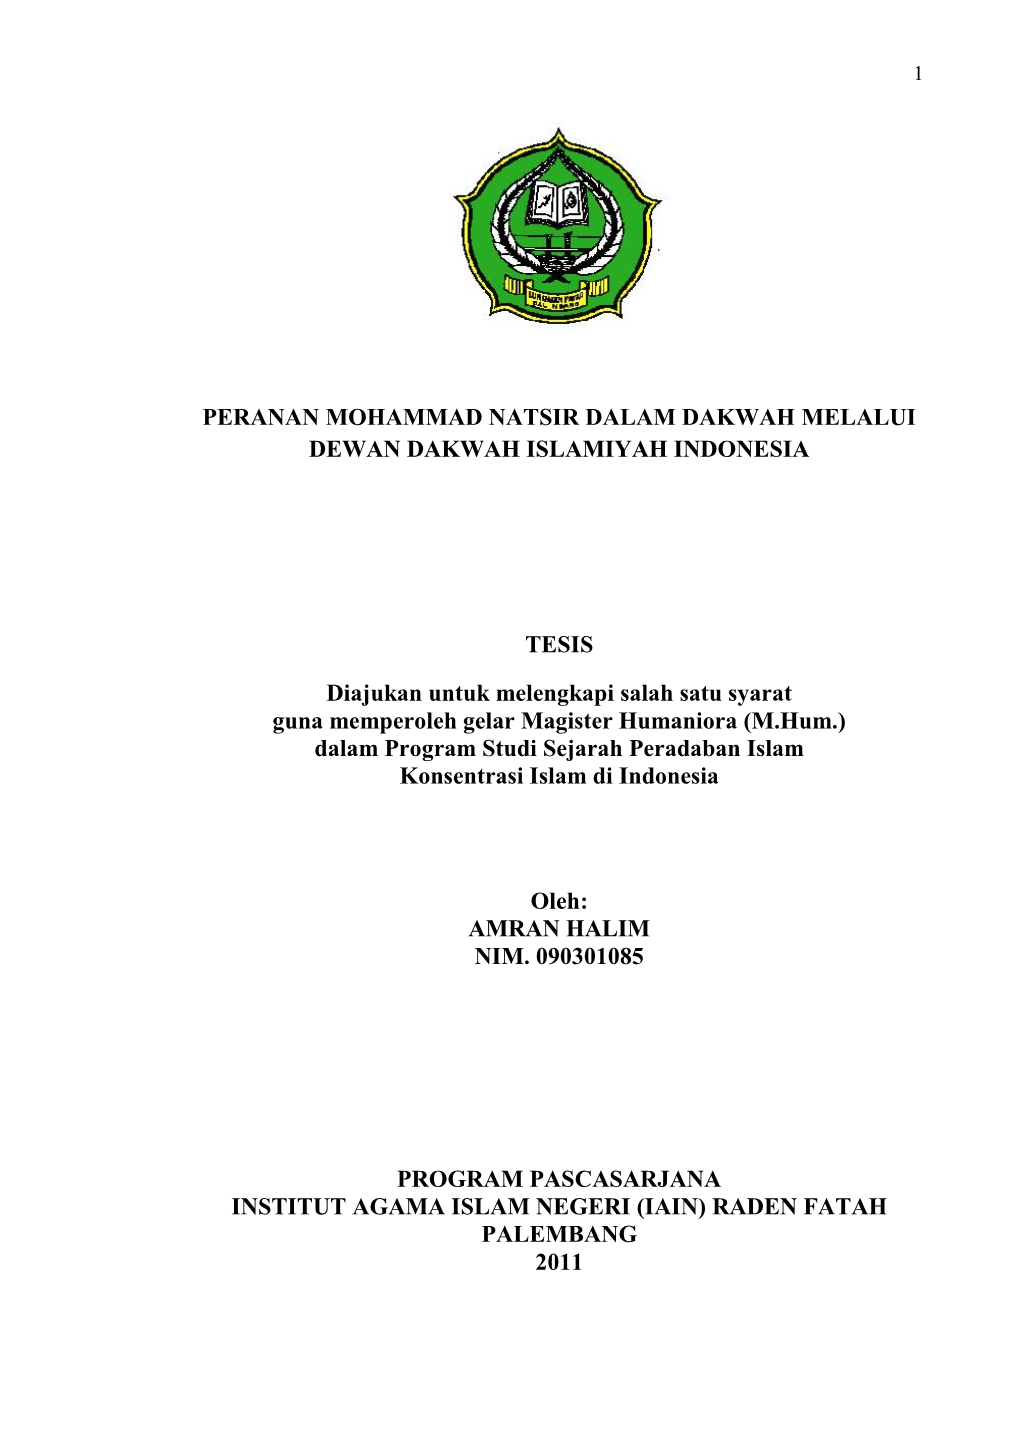 Peranan Mohammad Natsir Dalam Dakwah Melalui Dewan Dakwah Islamiyah Indonesia